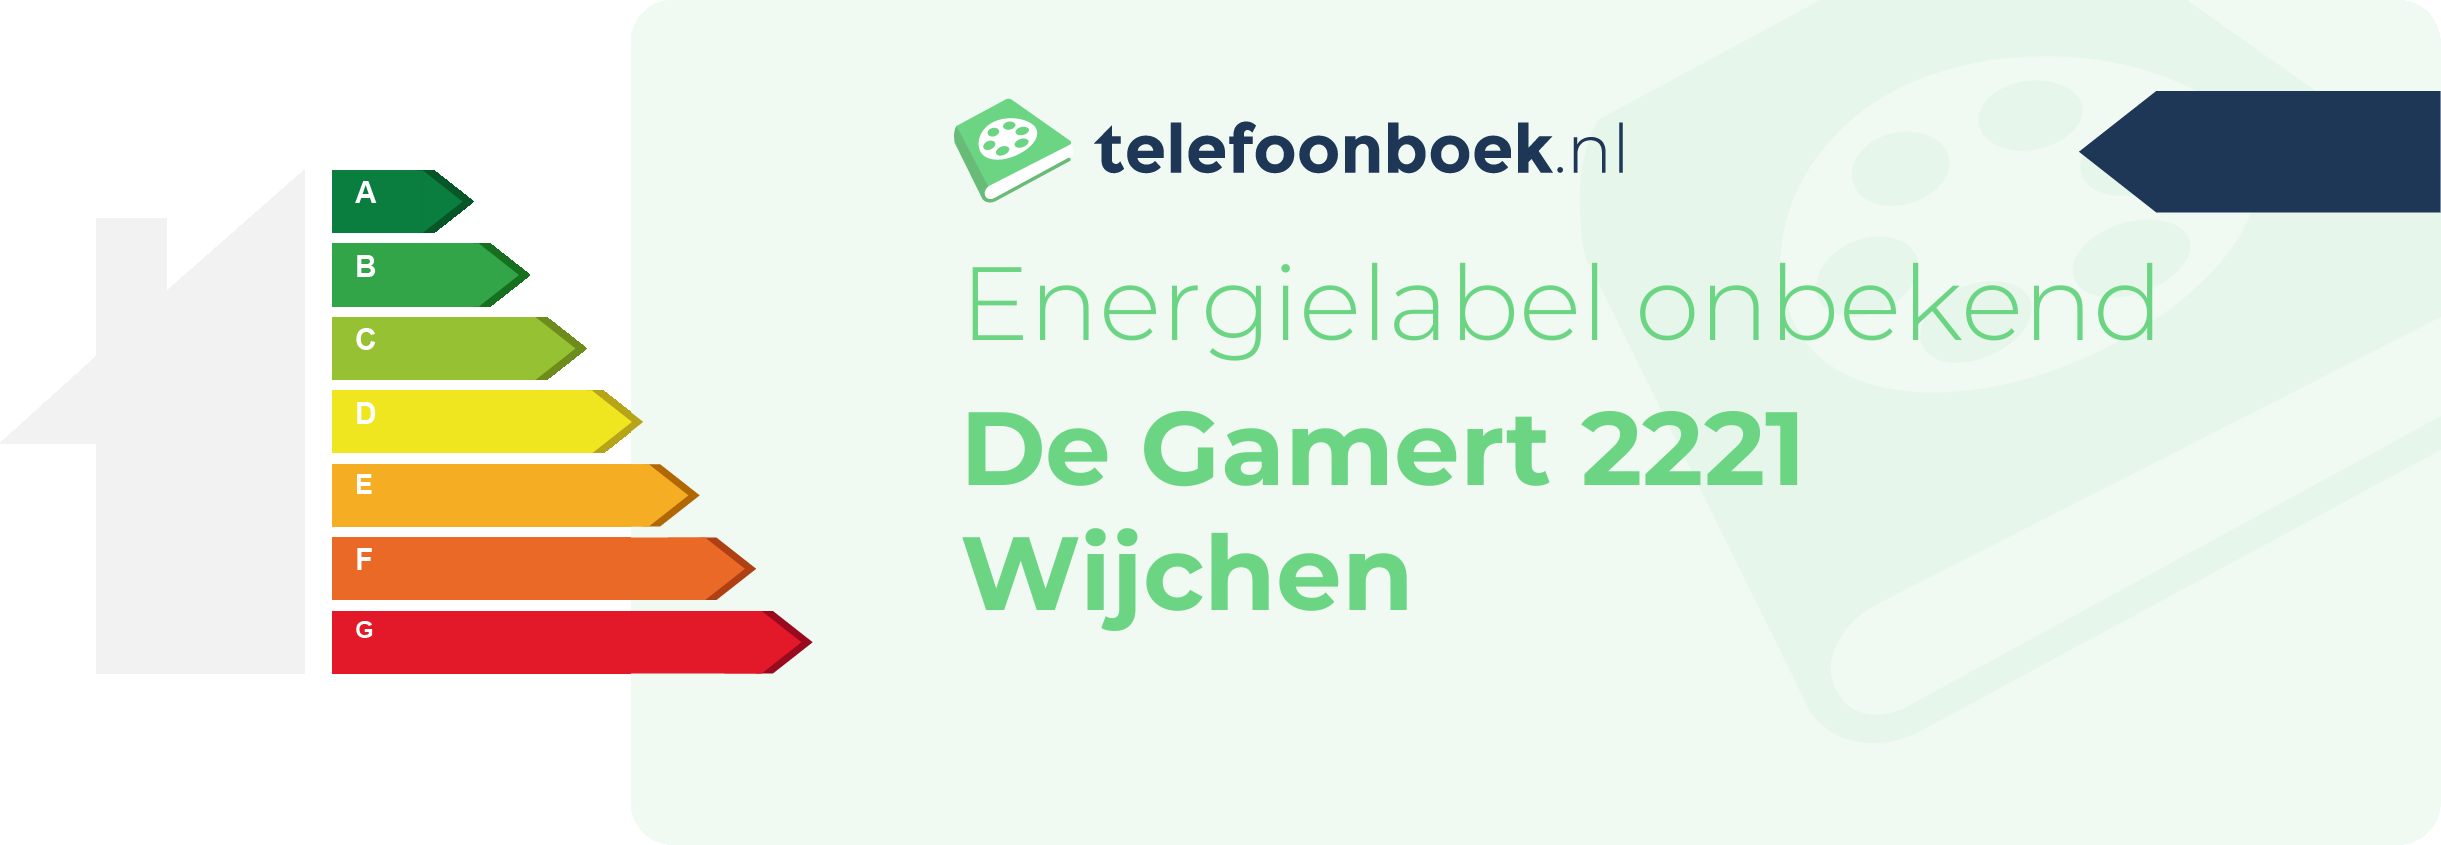 Energielabel De Gamert 2221 Wijchen